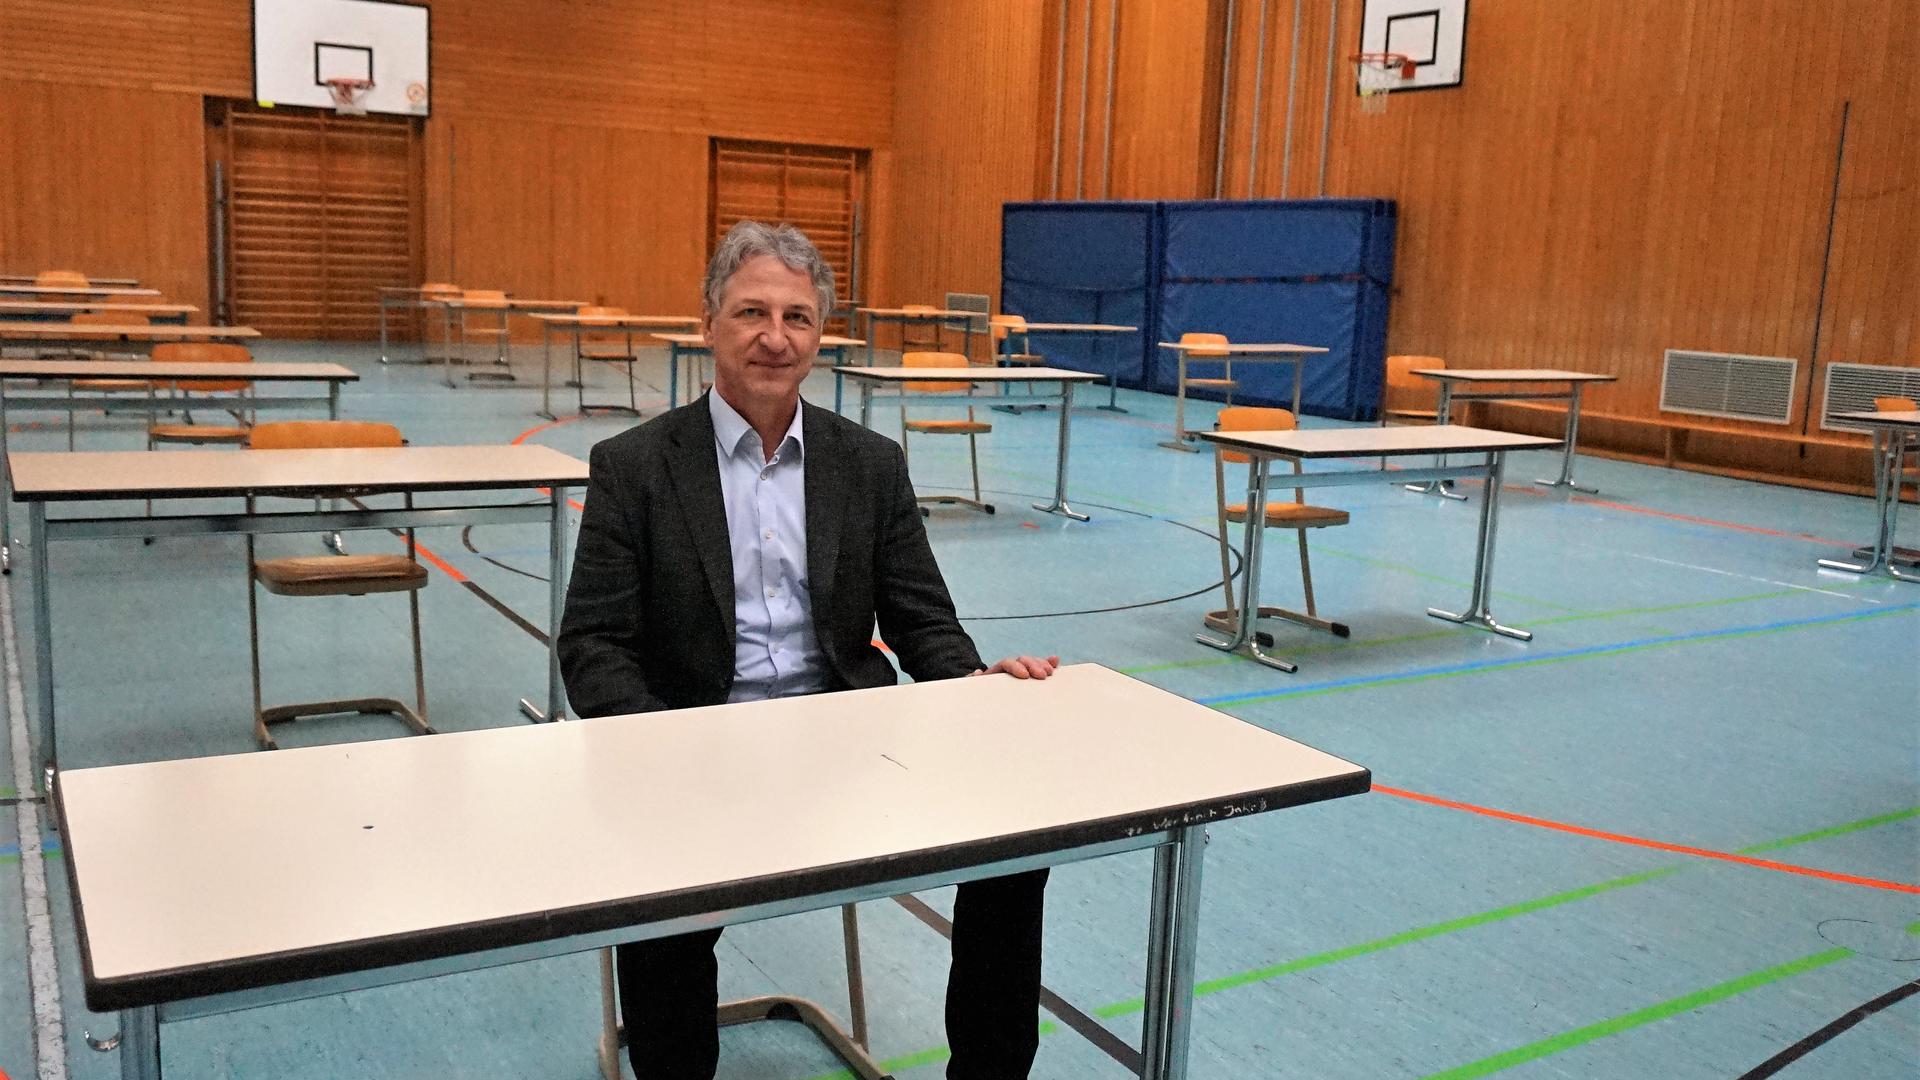 Probesitzen: Markus Braun, Direktor des Ludwig-Wilhelm-Gymnasiums in Rastatt, testet Tisch und Stühle in der Turnhalle. Ab kommendem Montag schreiben dort seine Schüler ihre Abschlussprüfungen.